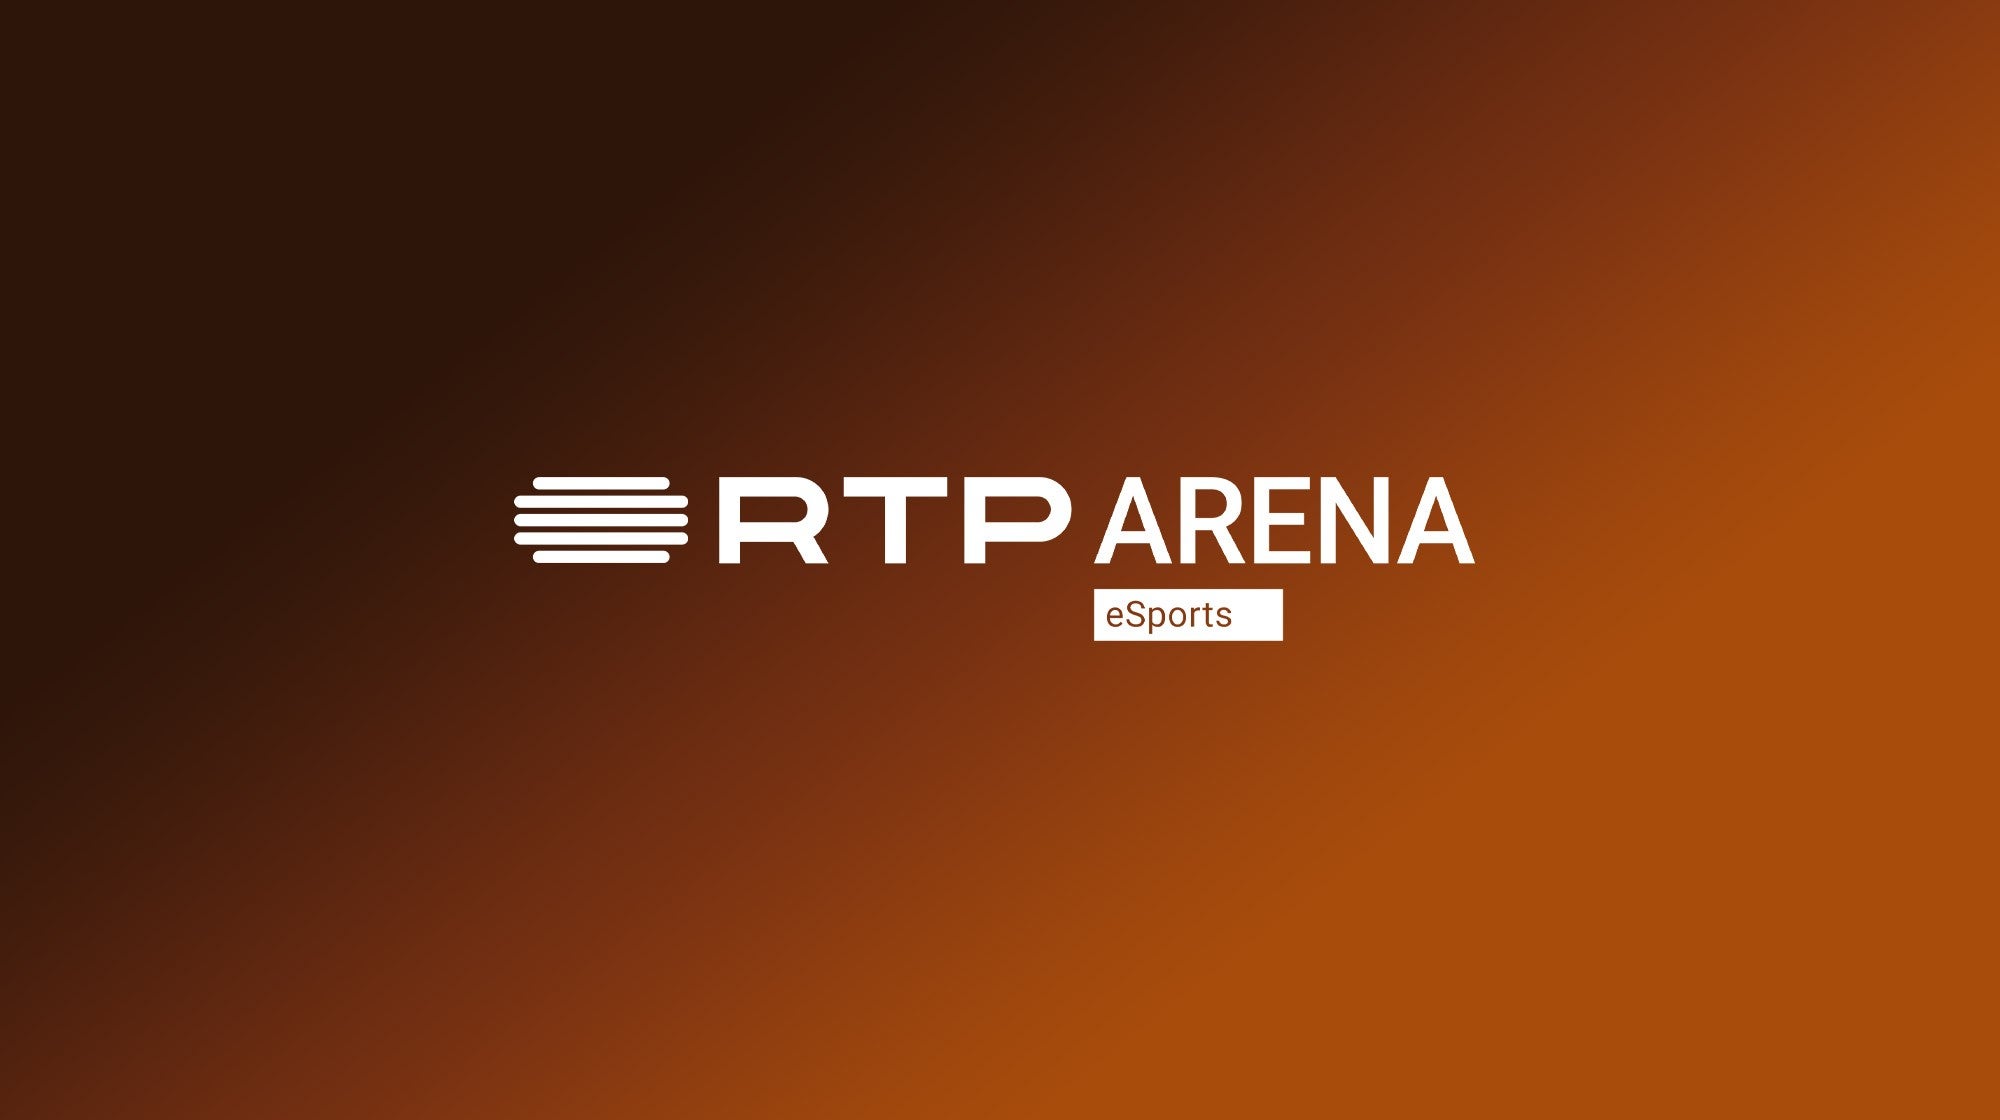 Magazine RTP Arena eSports